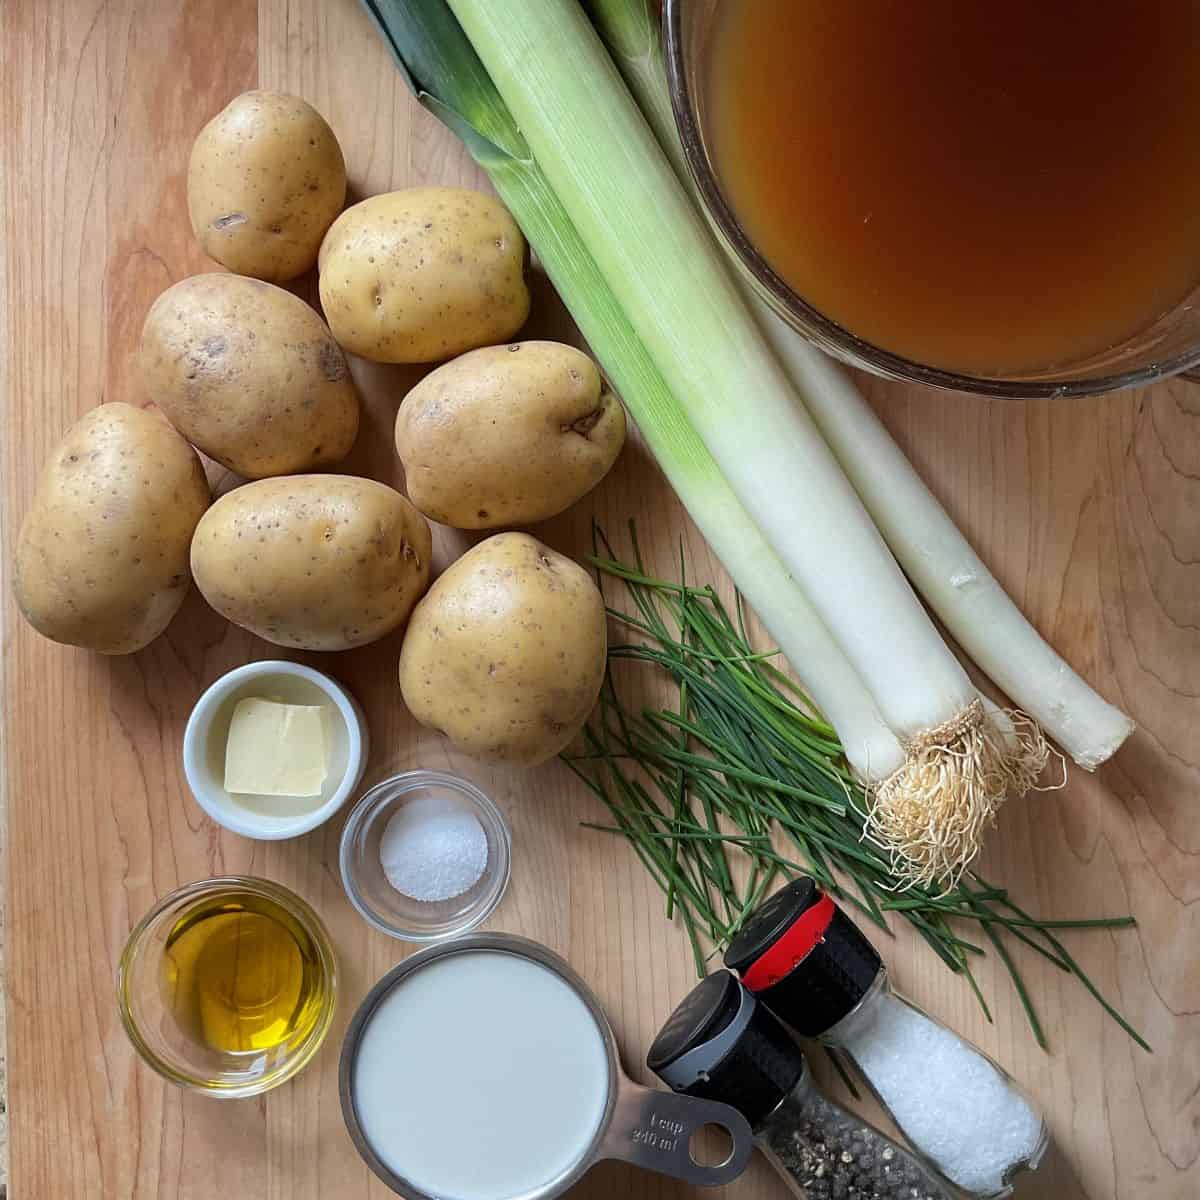 Ingredients to make potato leek soup.